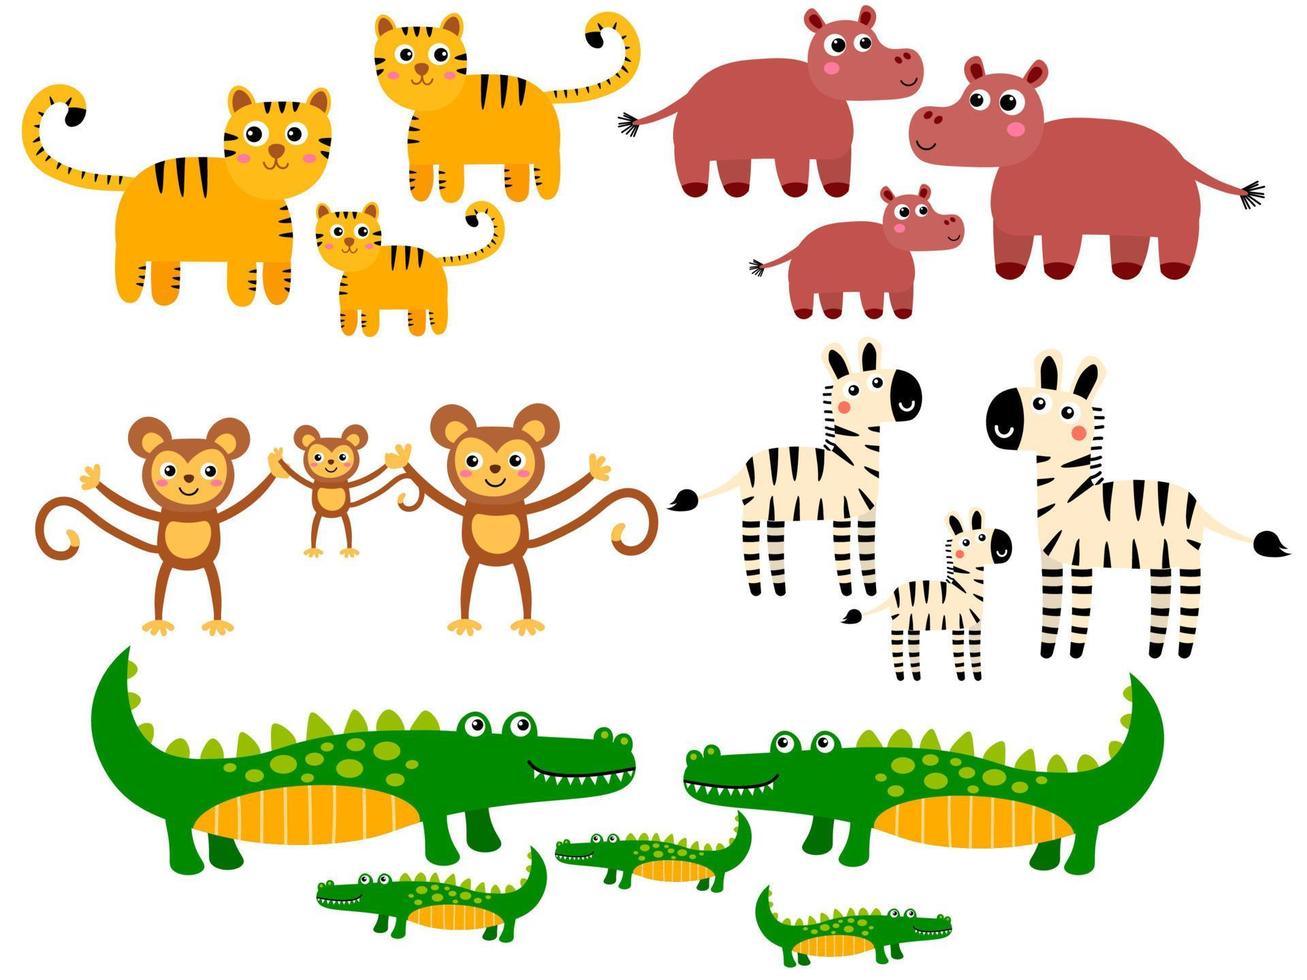 simpatiche tigri e ippopotami, scimmie e zebre, famiglie di coccodrilli. Cartoon animali selvatici africani in stile piatto infantile isolato su sfondo bianco vettore